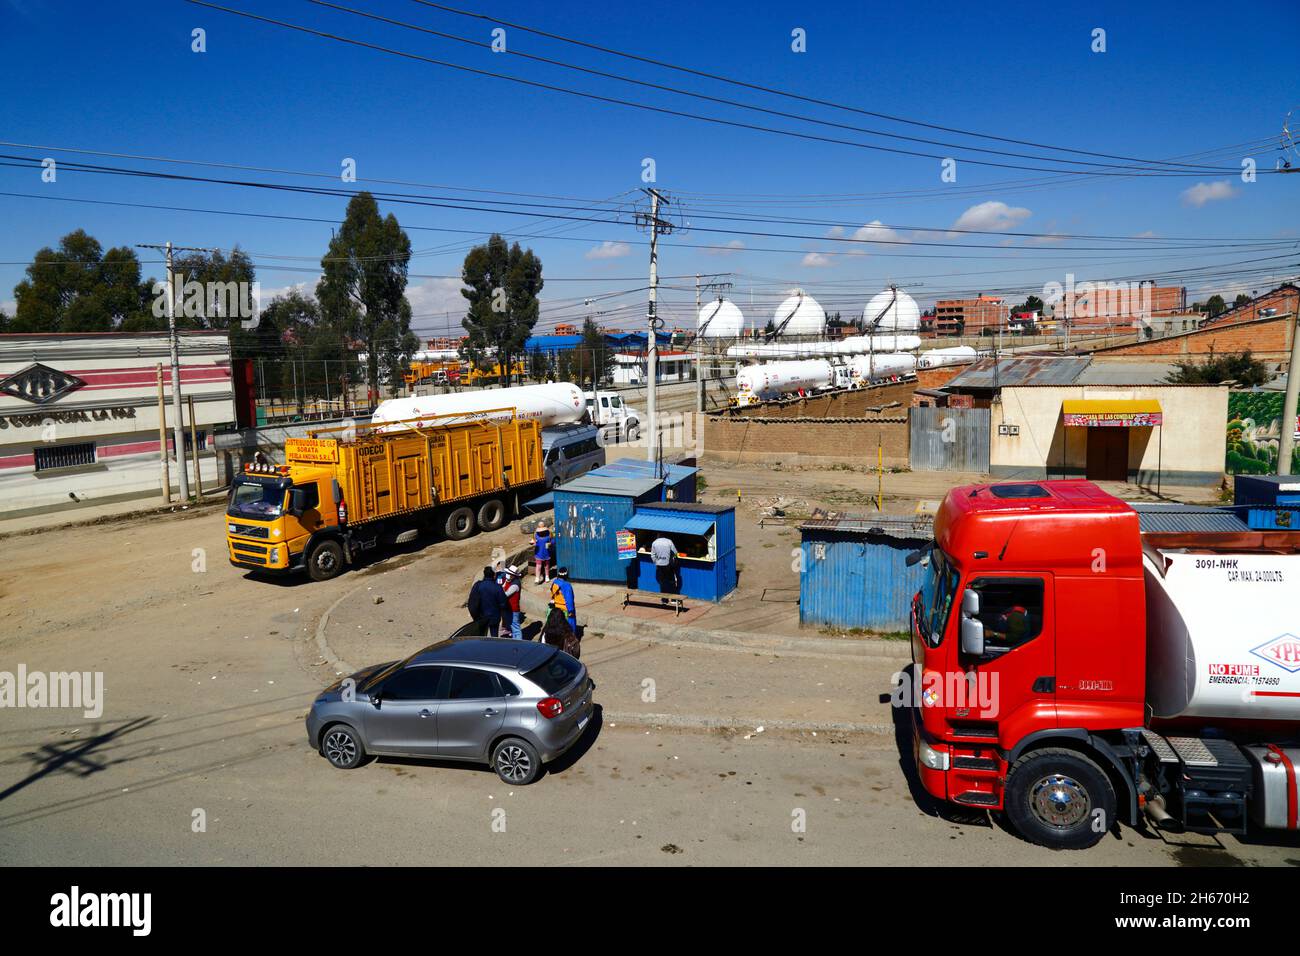 Senkata, El Alto, Bolivia. 13th de noviembre de 2021. Camiones cisterna de gas natural líquido y un camión de suministro de gas (amarillo) en las afueras de la planta de combustible Senkata en la Av 6 de Marzo / Camino Oruro en El Alto. Yacimientos Petrolíferos Fiscales Bolivianos (YPFB, la compañía estatal boliviana de petróleo y gas) tiene una gran refinería y planta de almacenamiento aquí, Que suministra a La Paz, El Alto y sus alrededores gasolina / gasolina, diesel y gas natural líquido (en botellas para uso doméstico y también para vehículos y otras industrias). En el fondo están algunos de los tanques esféricos de almacenamiento de gas. Foto de stock